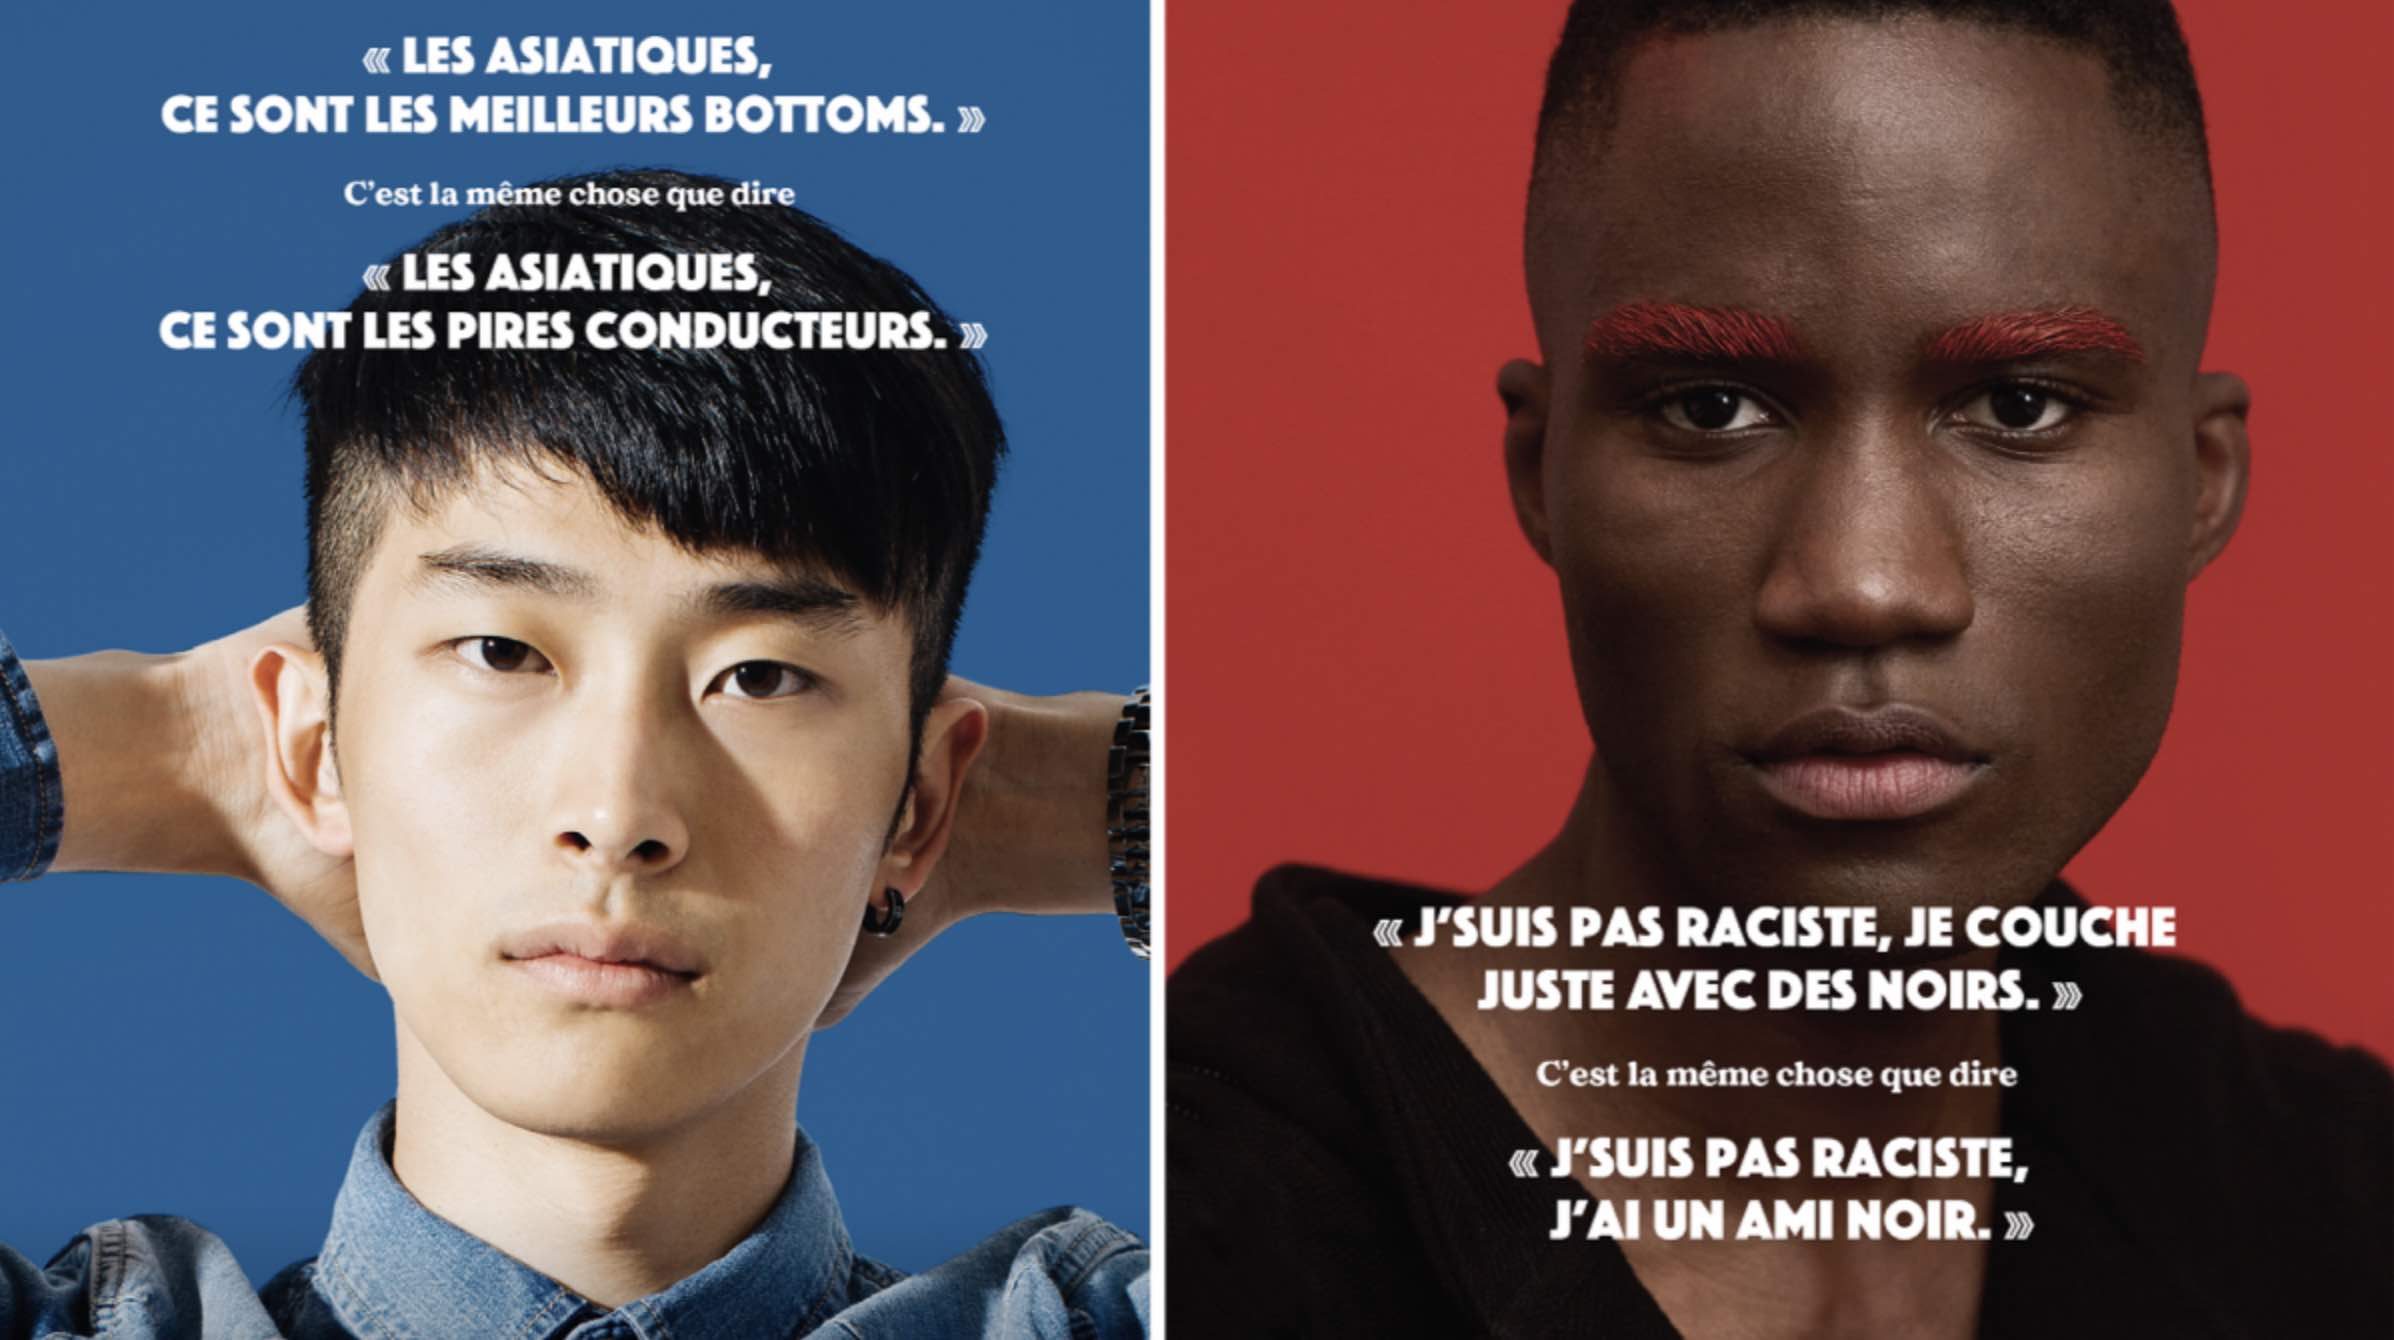 Des images de la campagne de RÉZO sur le racisme sexuel.